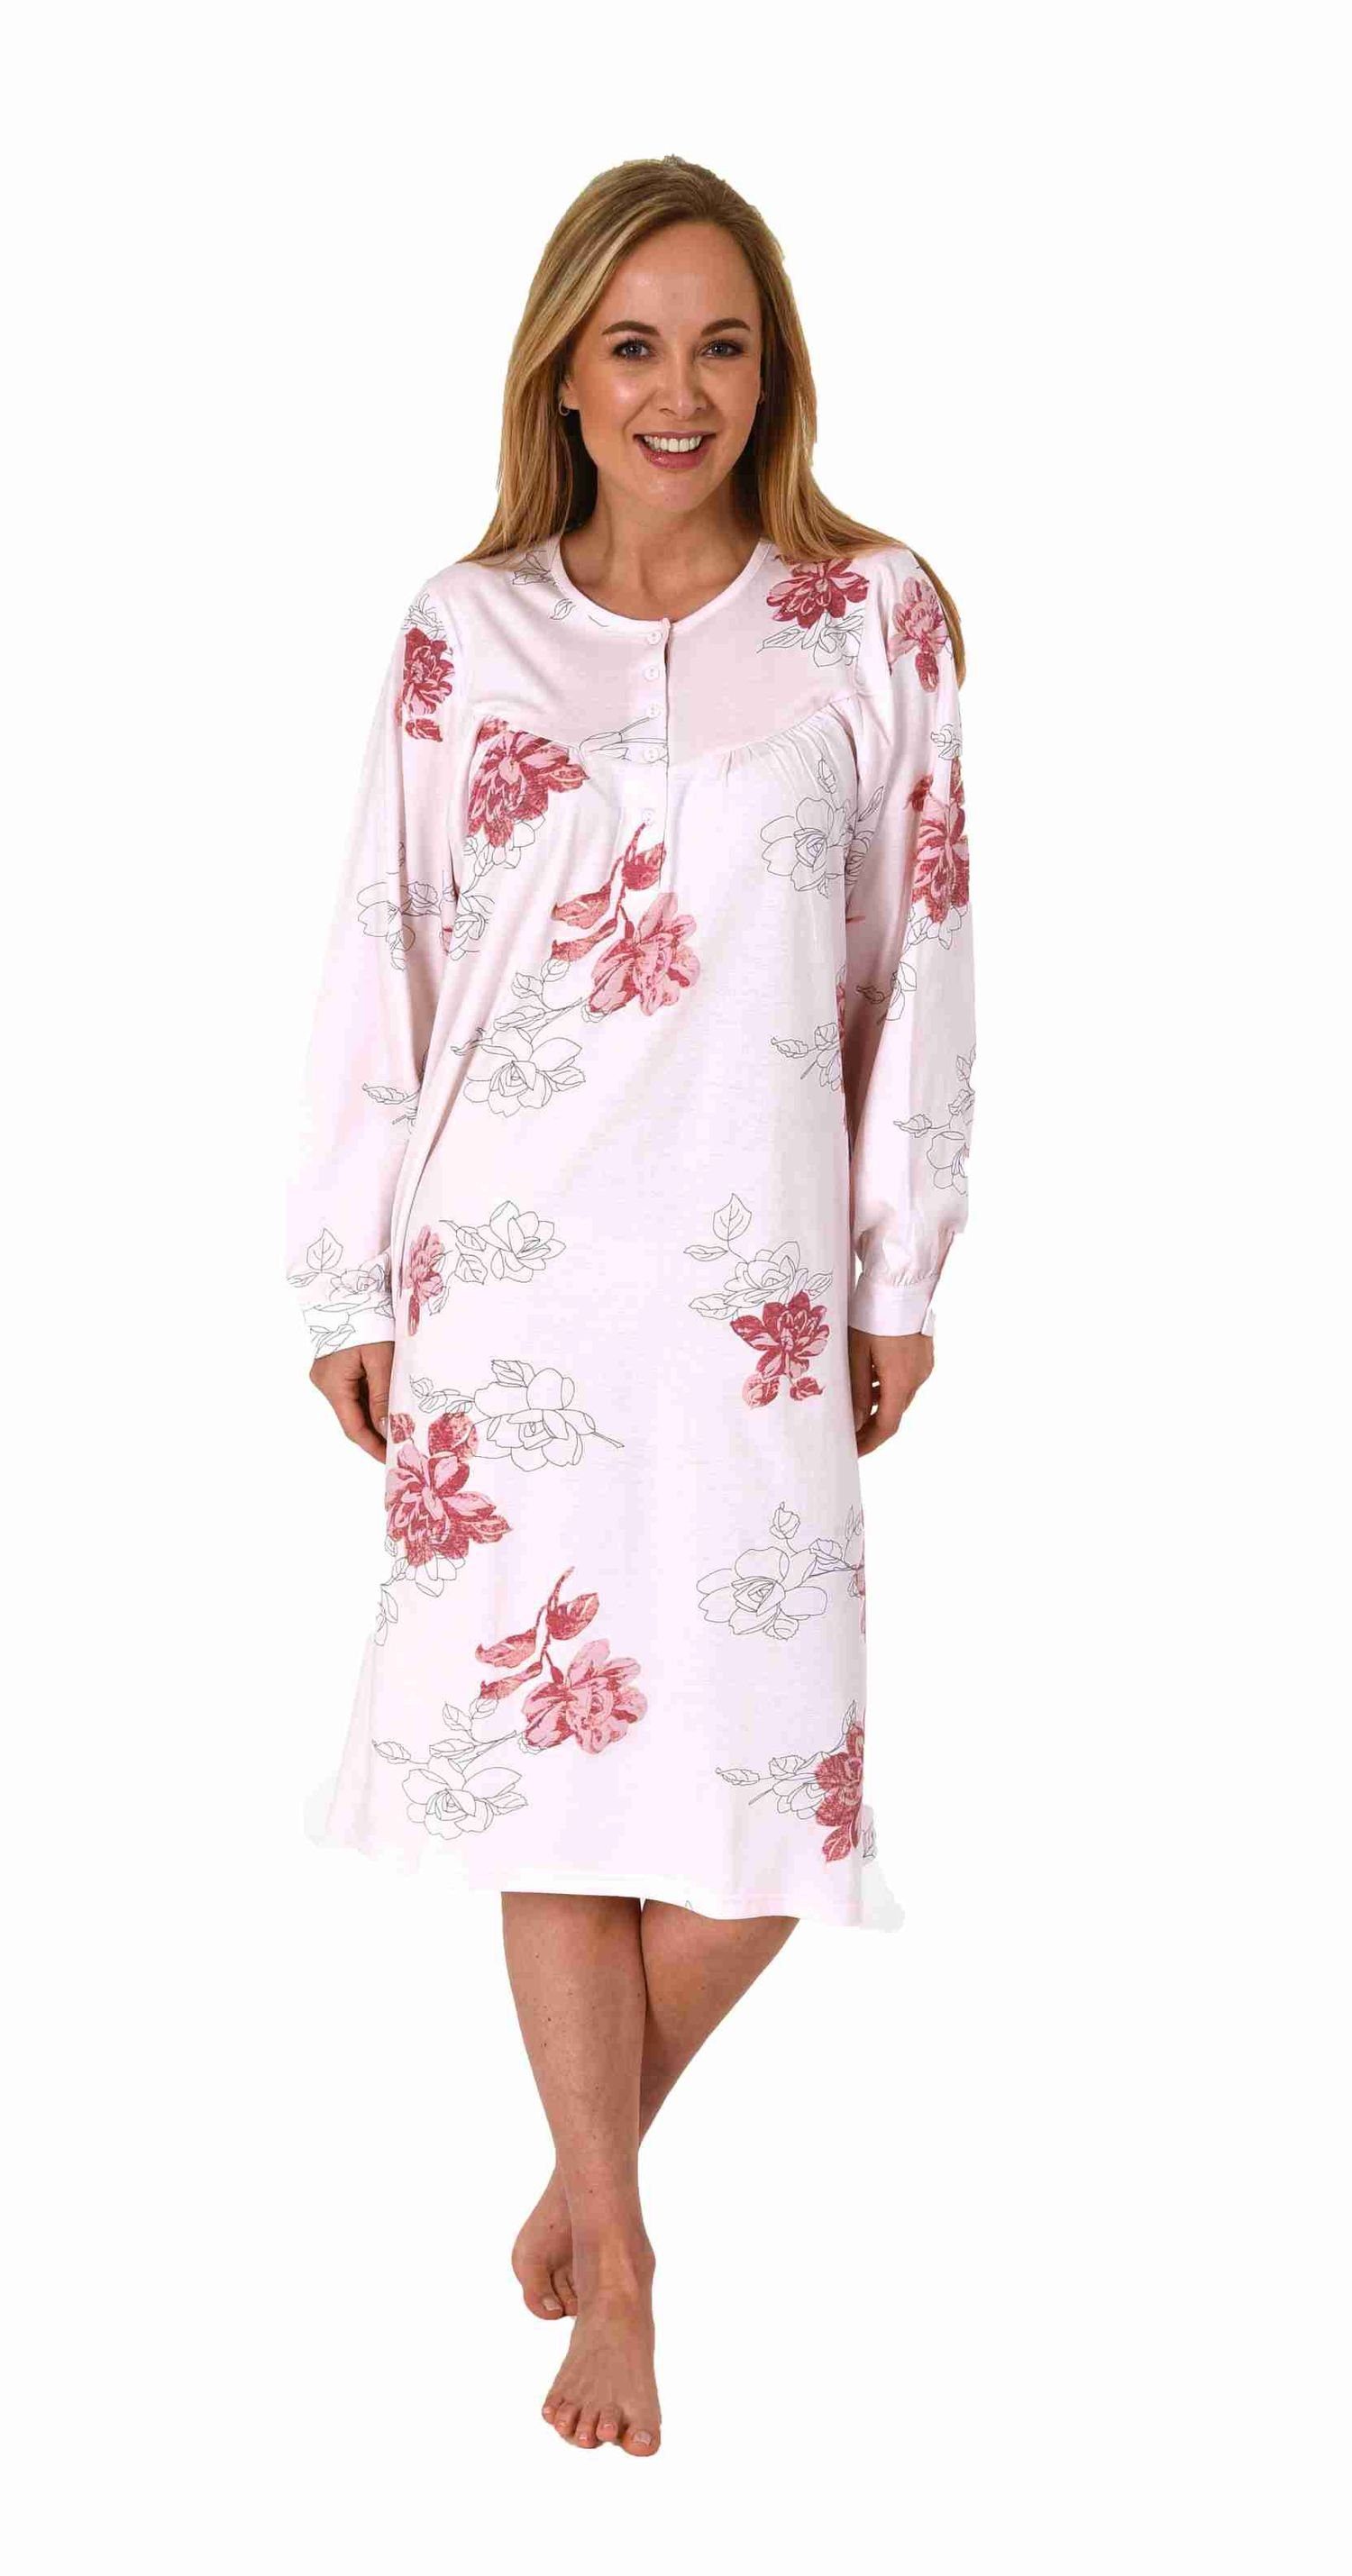 Normann Nachthemd Frauliches Damen Nachthemd,cm Länge, Knopfleiste am Hals - 202 600 rosa